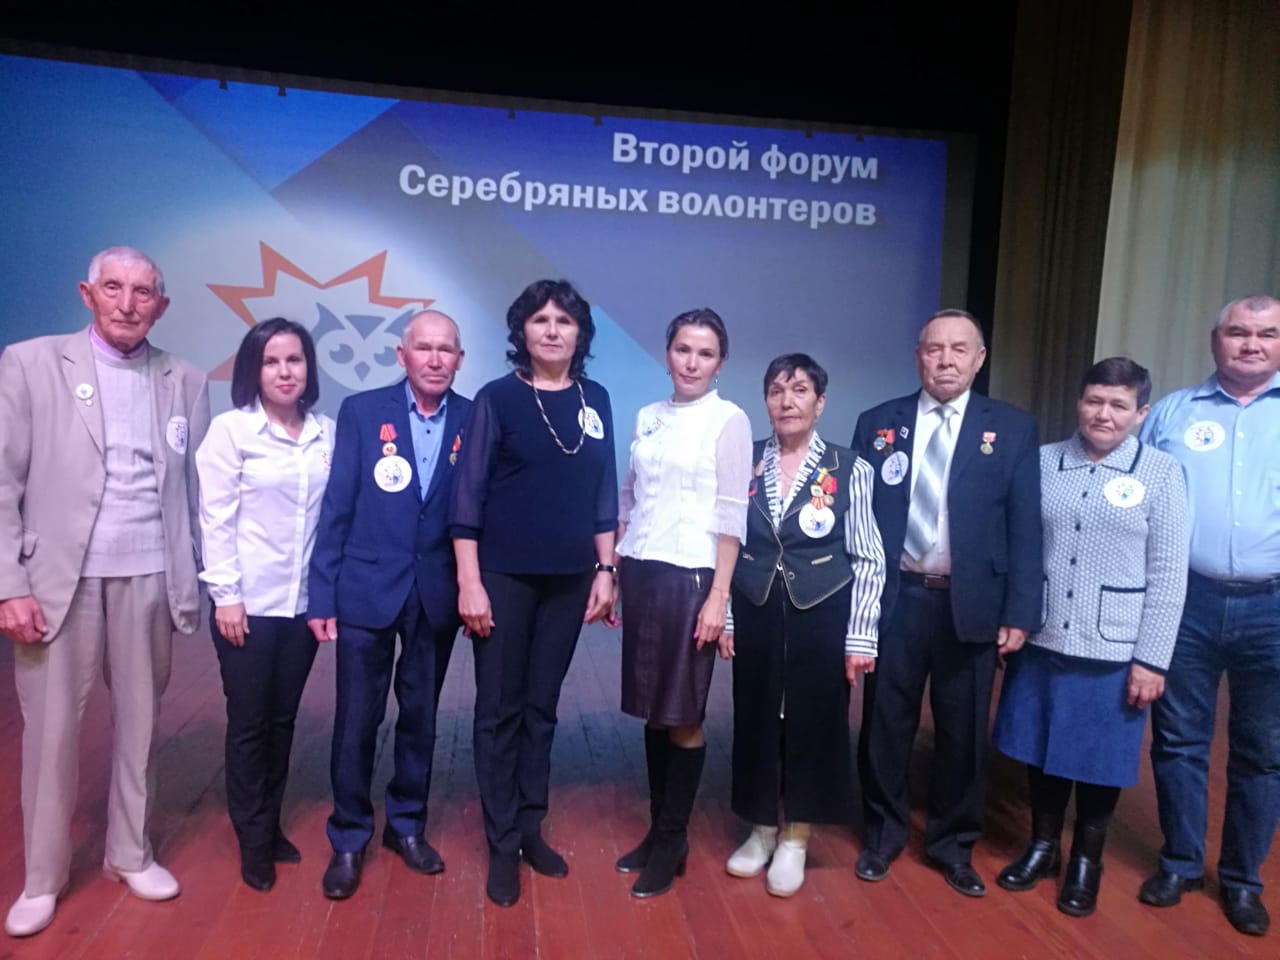 Серебряные волонтеры из Батырево